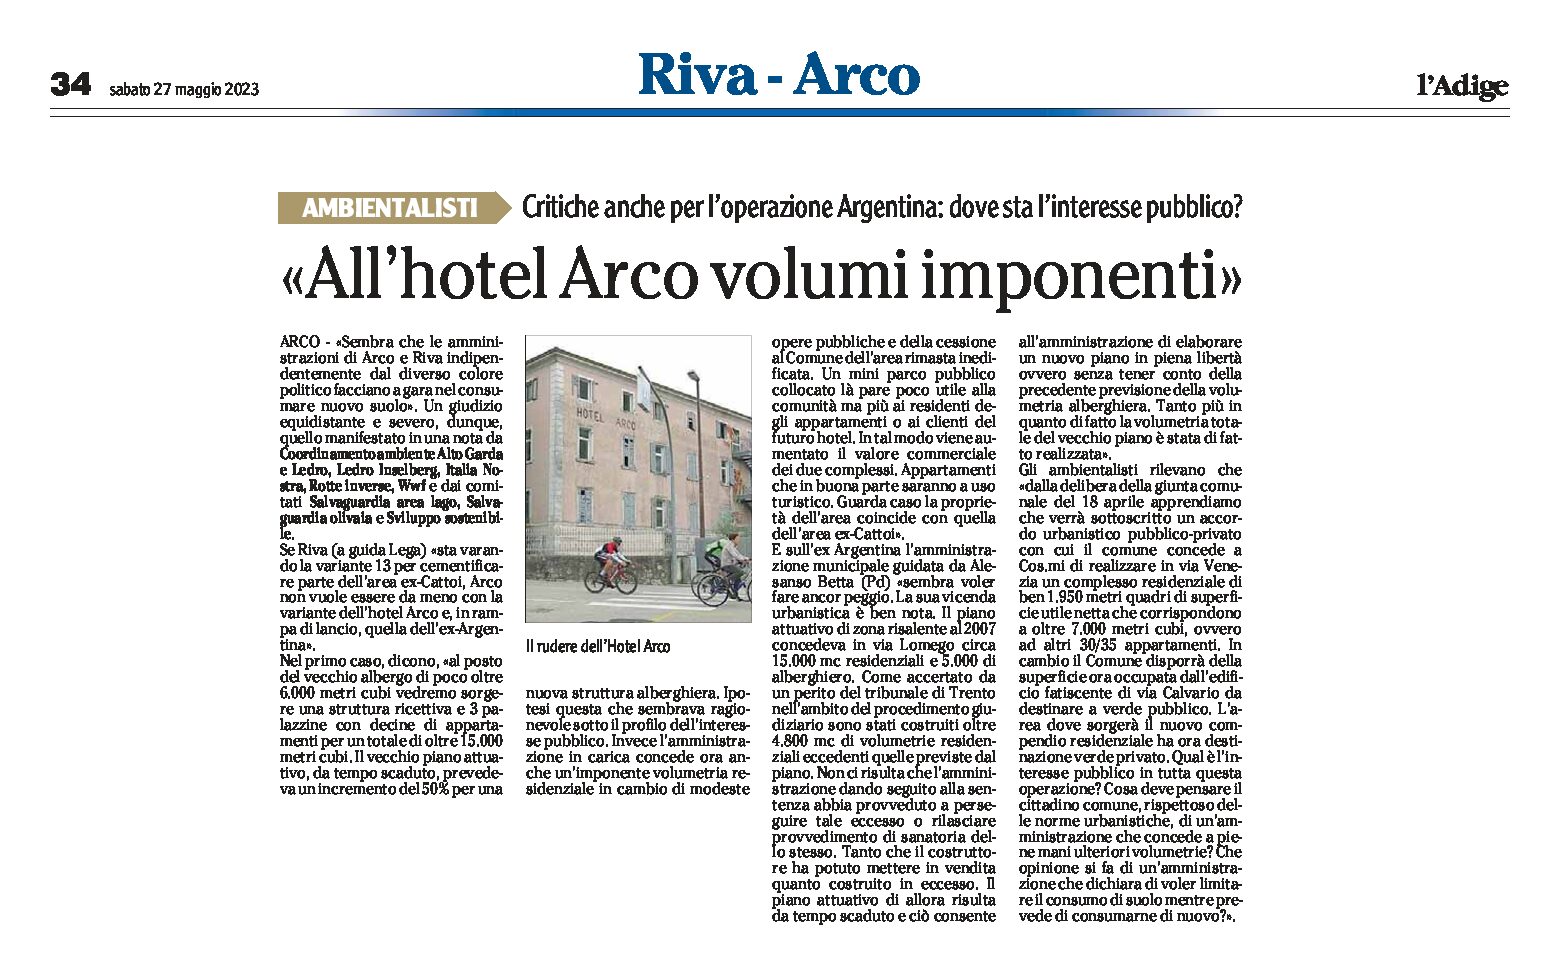 Arco: operazione Argentina e Hotel Arco, volumi imponenti